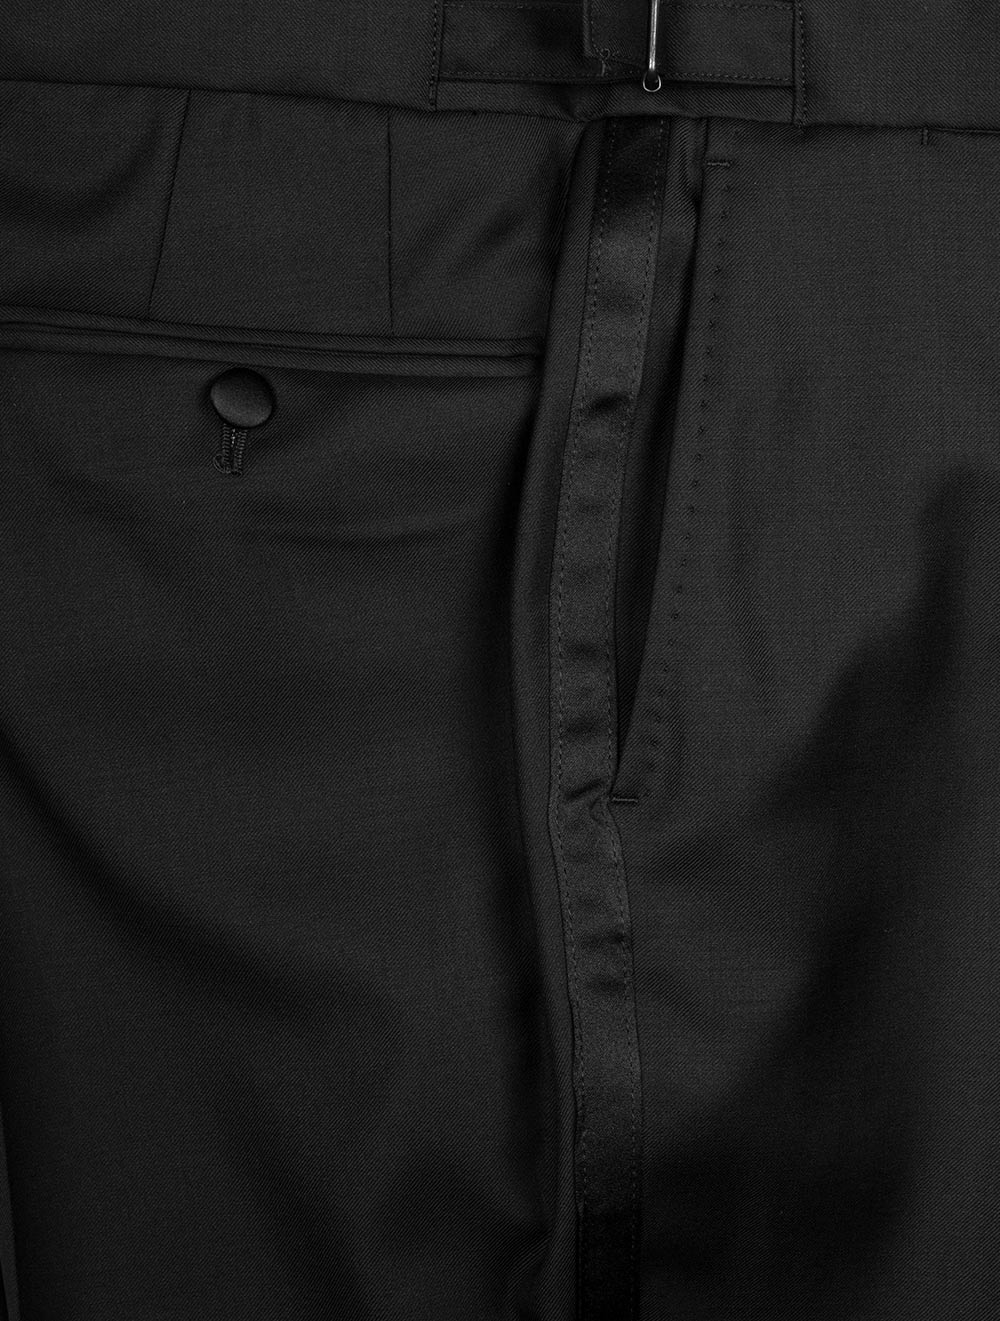 Louis Copeland Dress Suit Tuxedo Black 2 Piece 1 Button Single Peaked Lapel 7